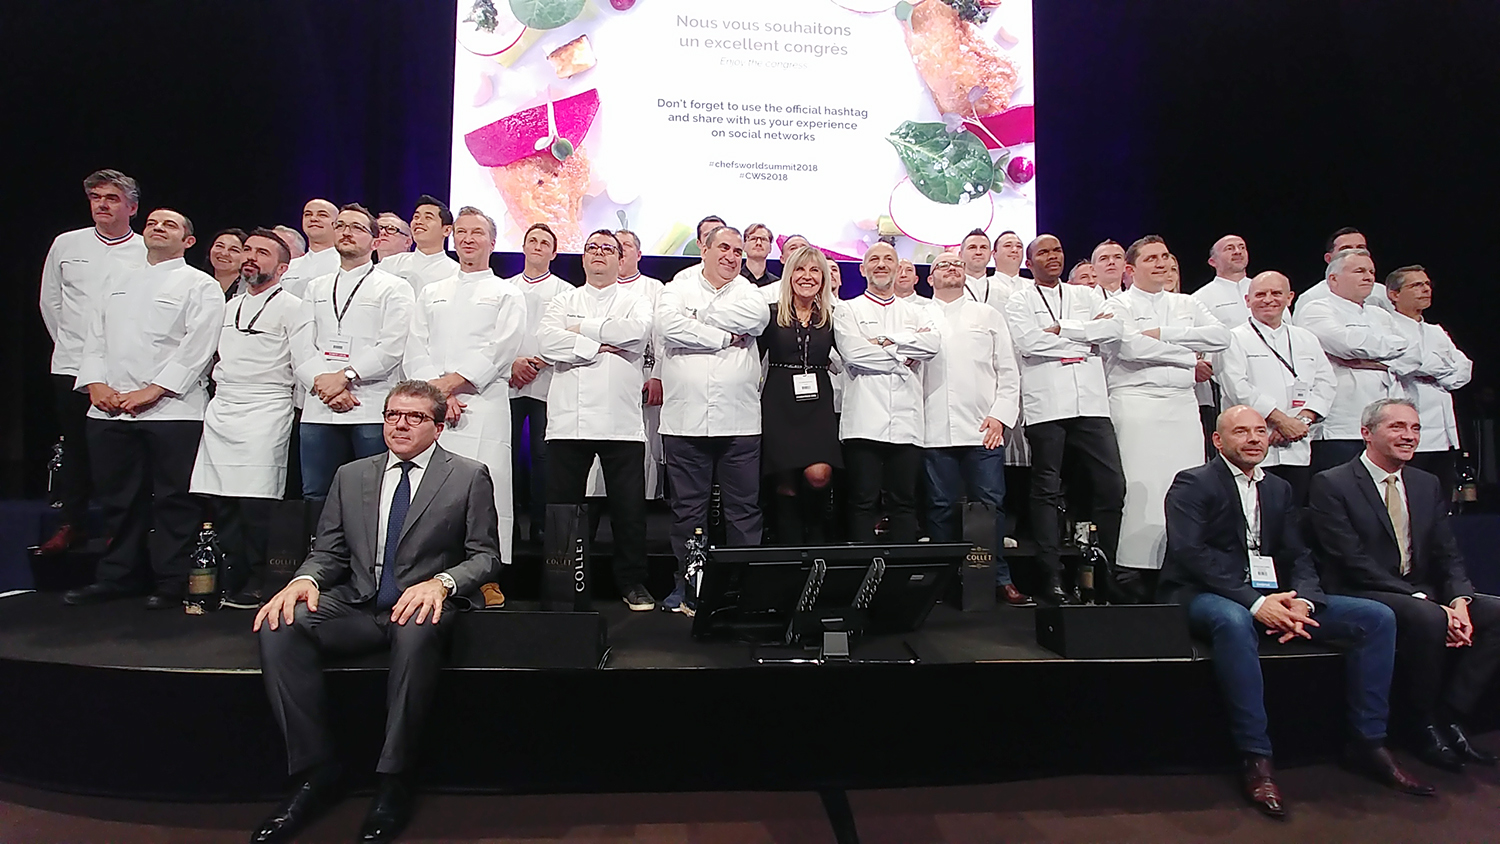 chefs world summit